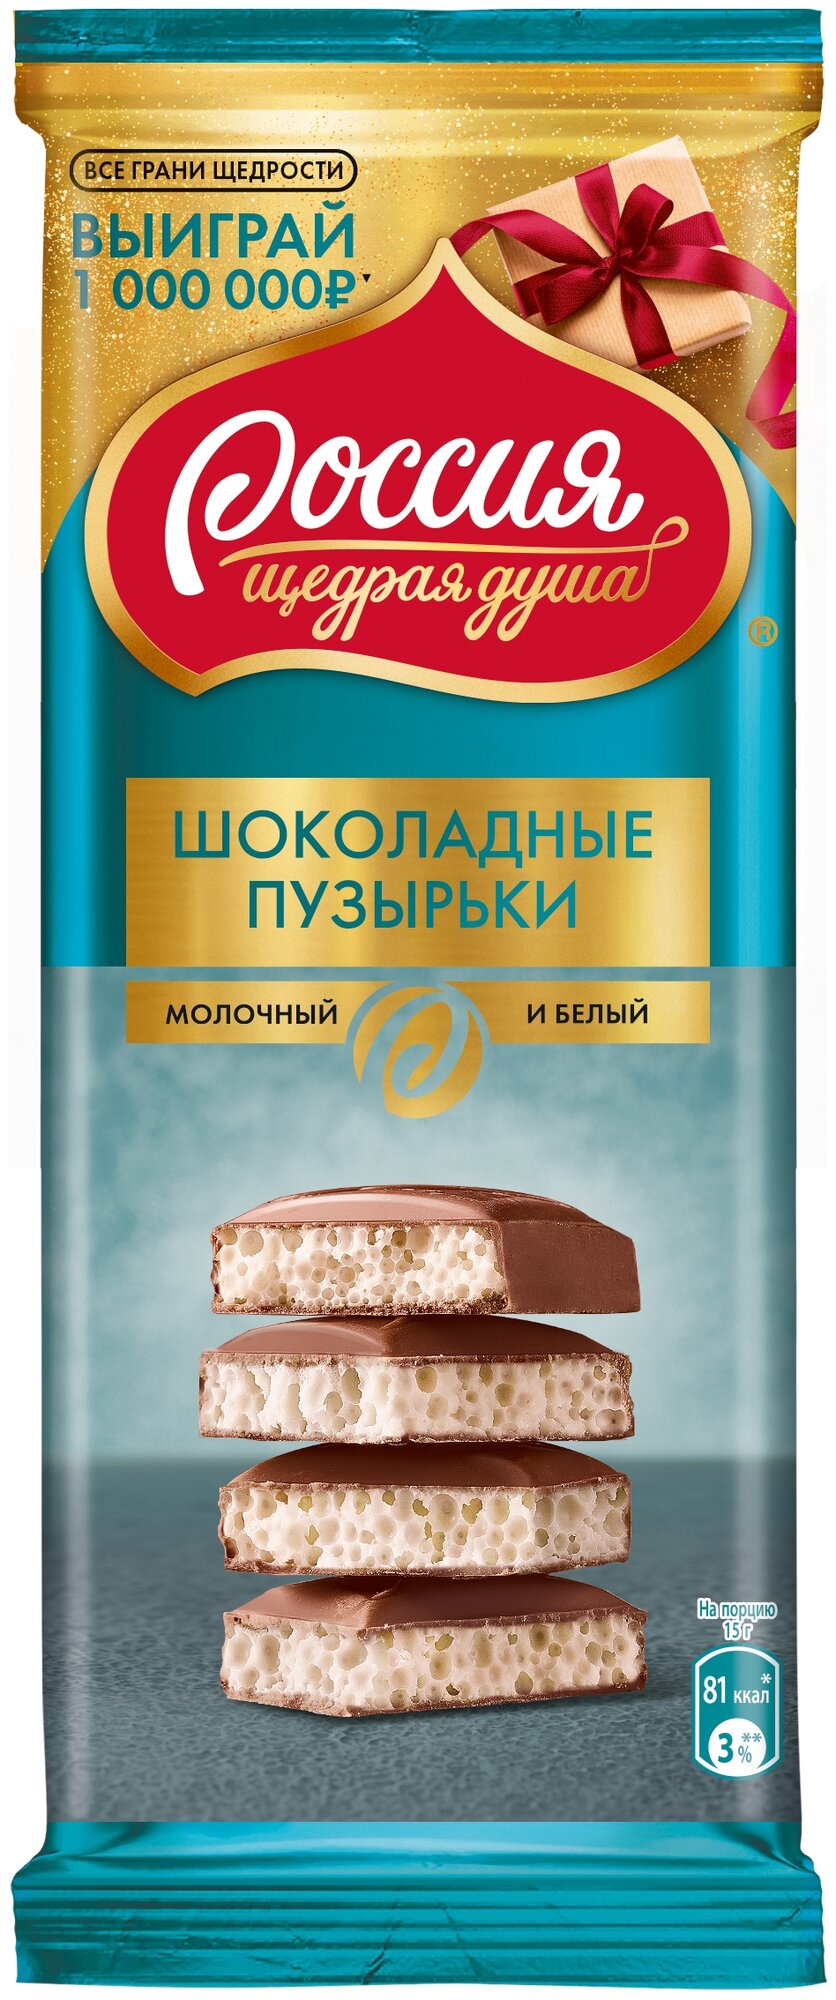 «Россия» - щедрая душа!®. Шоколадные пузырьки. Шоколад молочный и белый пористый 75г.